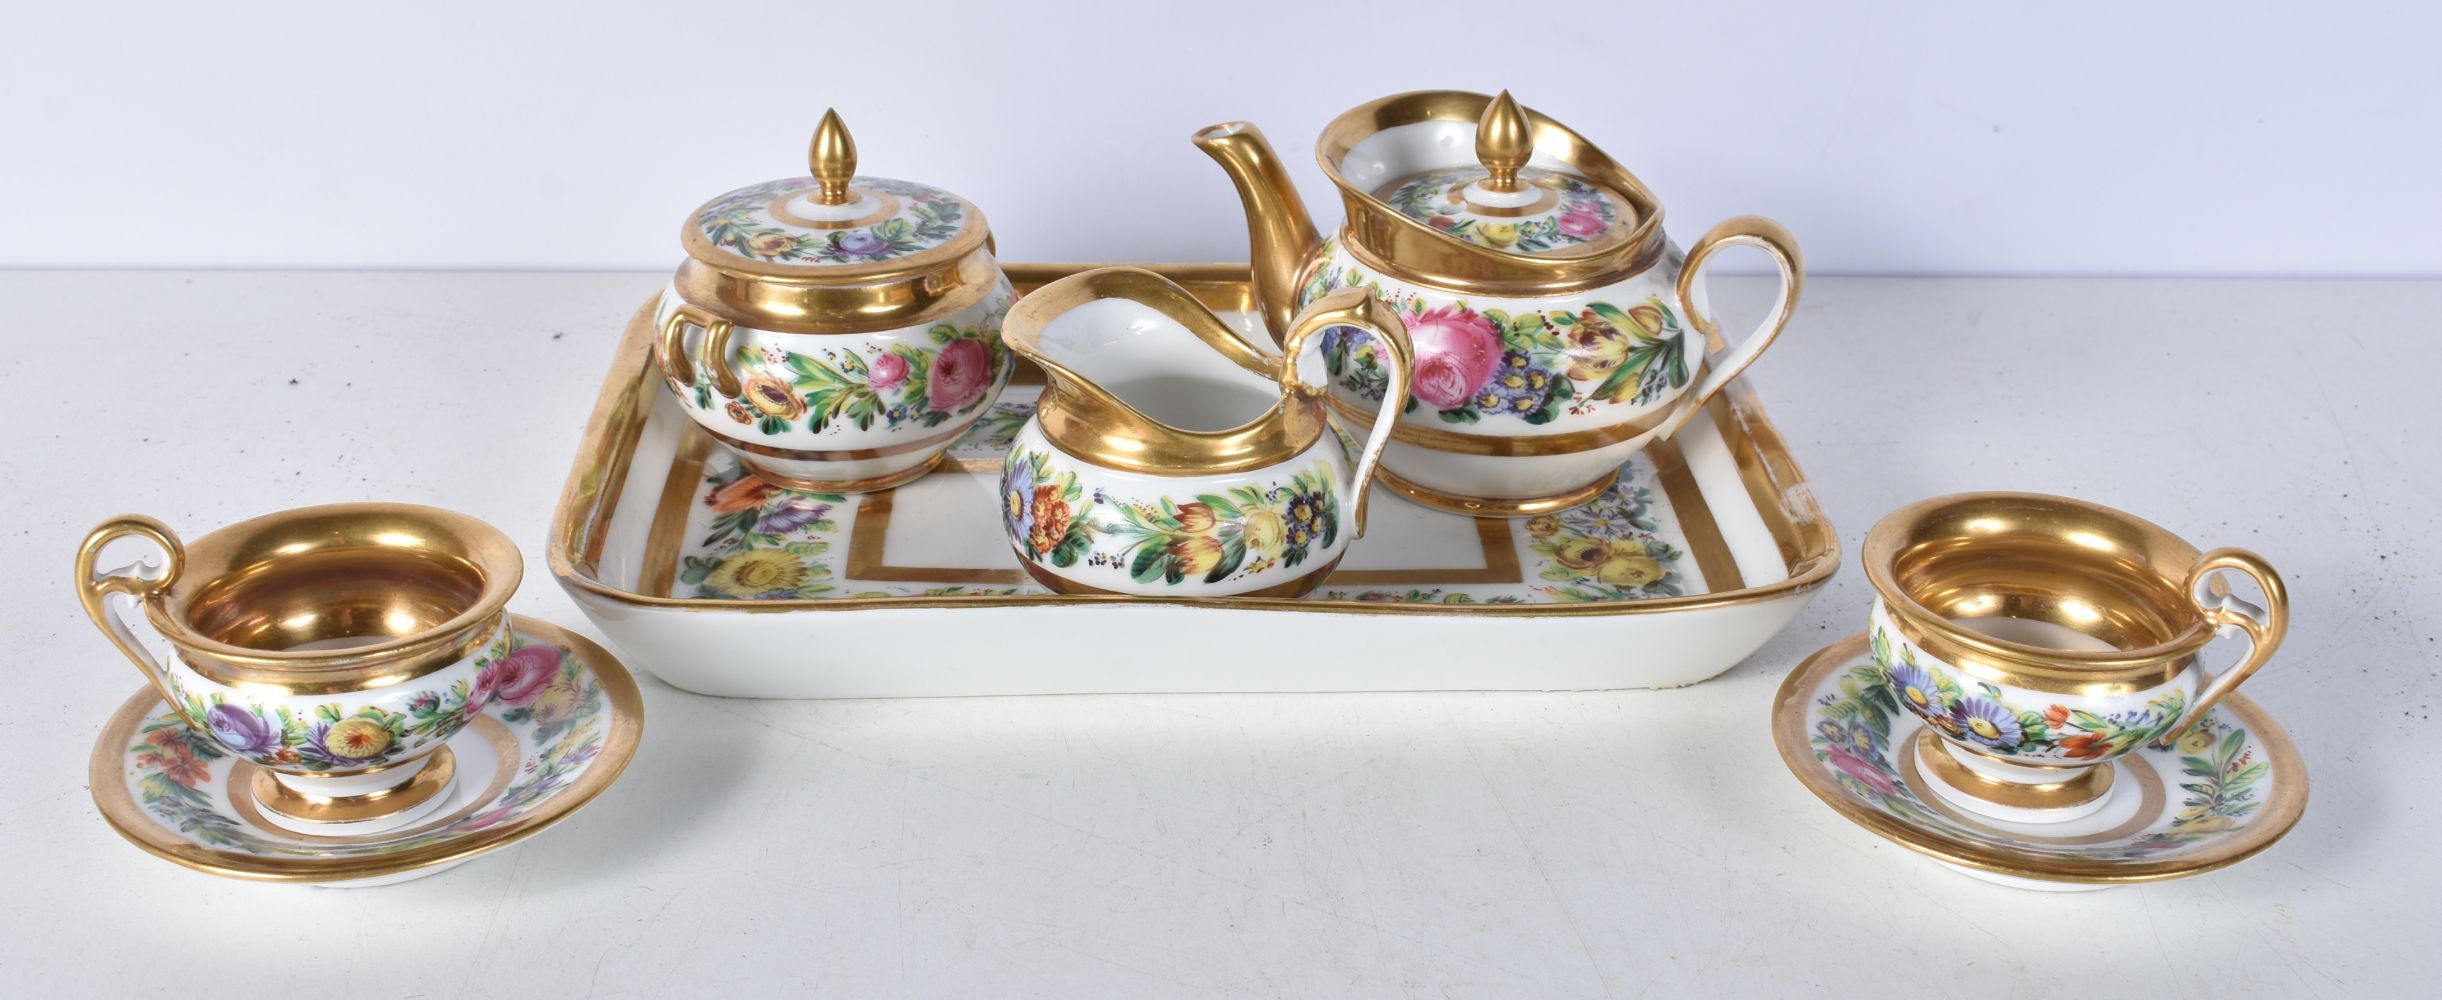 A small 19th Century Paris porcelain tea set largest 23 x 15.5 cm (8) - Image 5 of 6